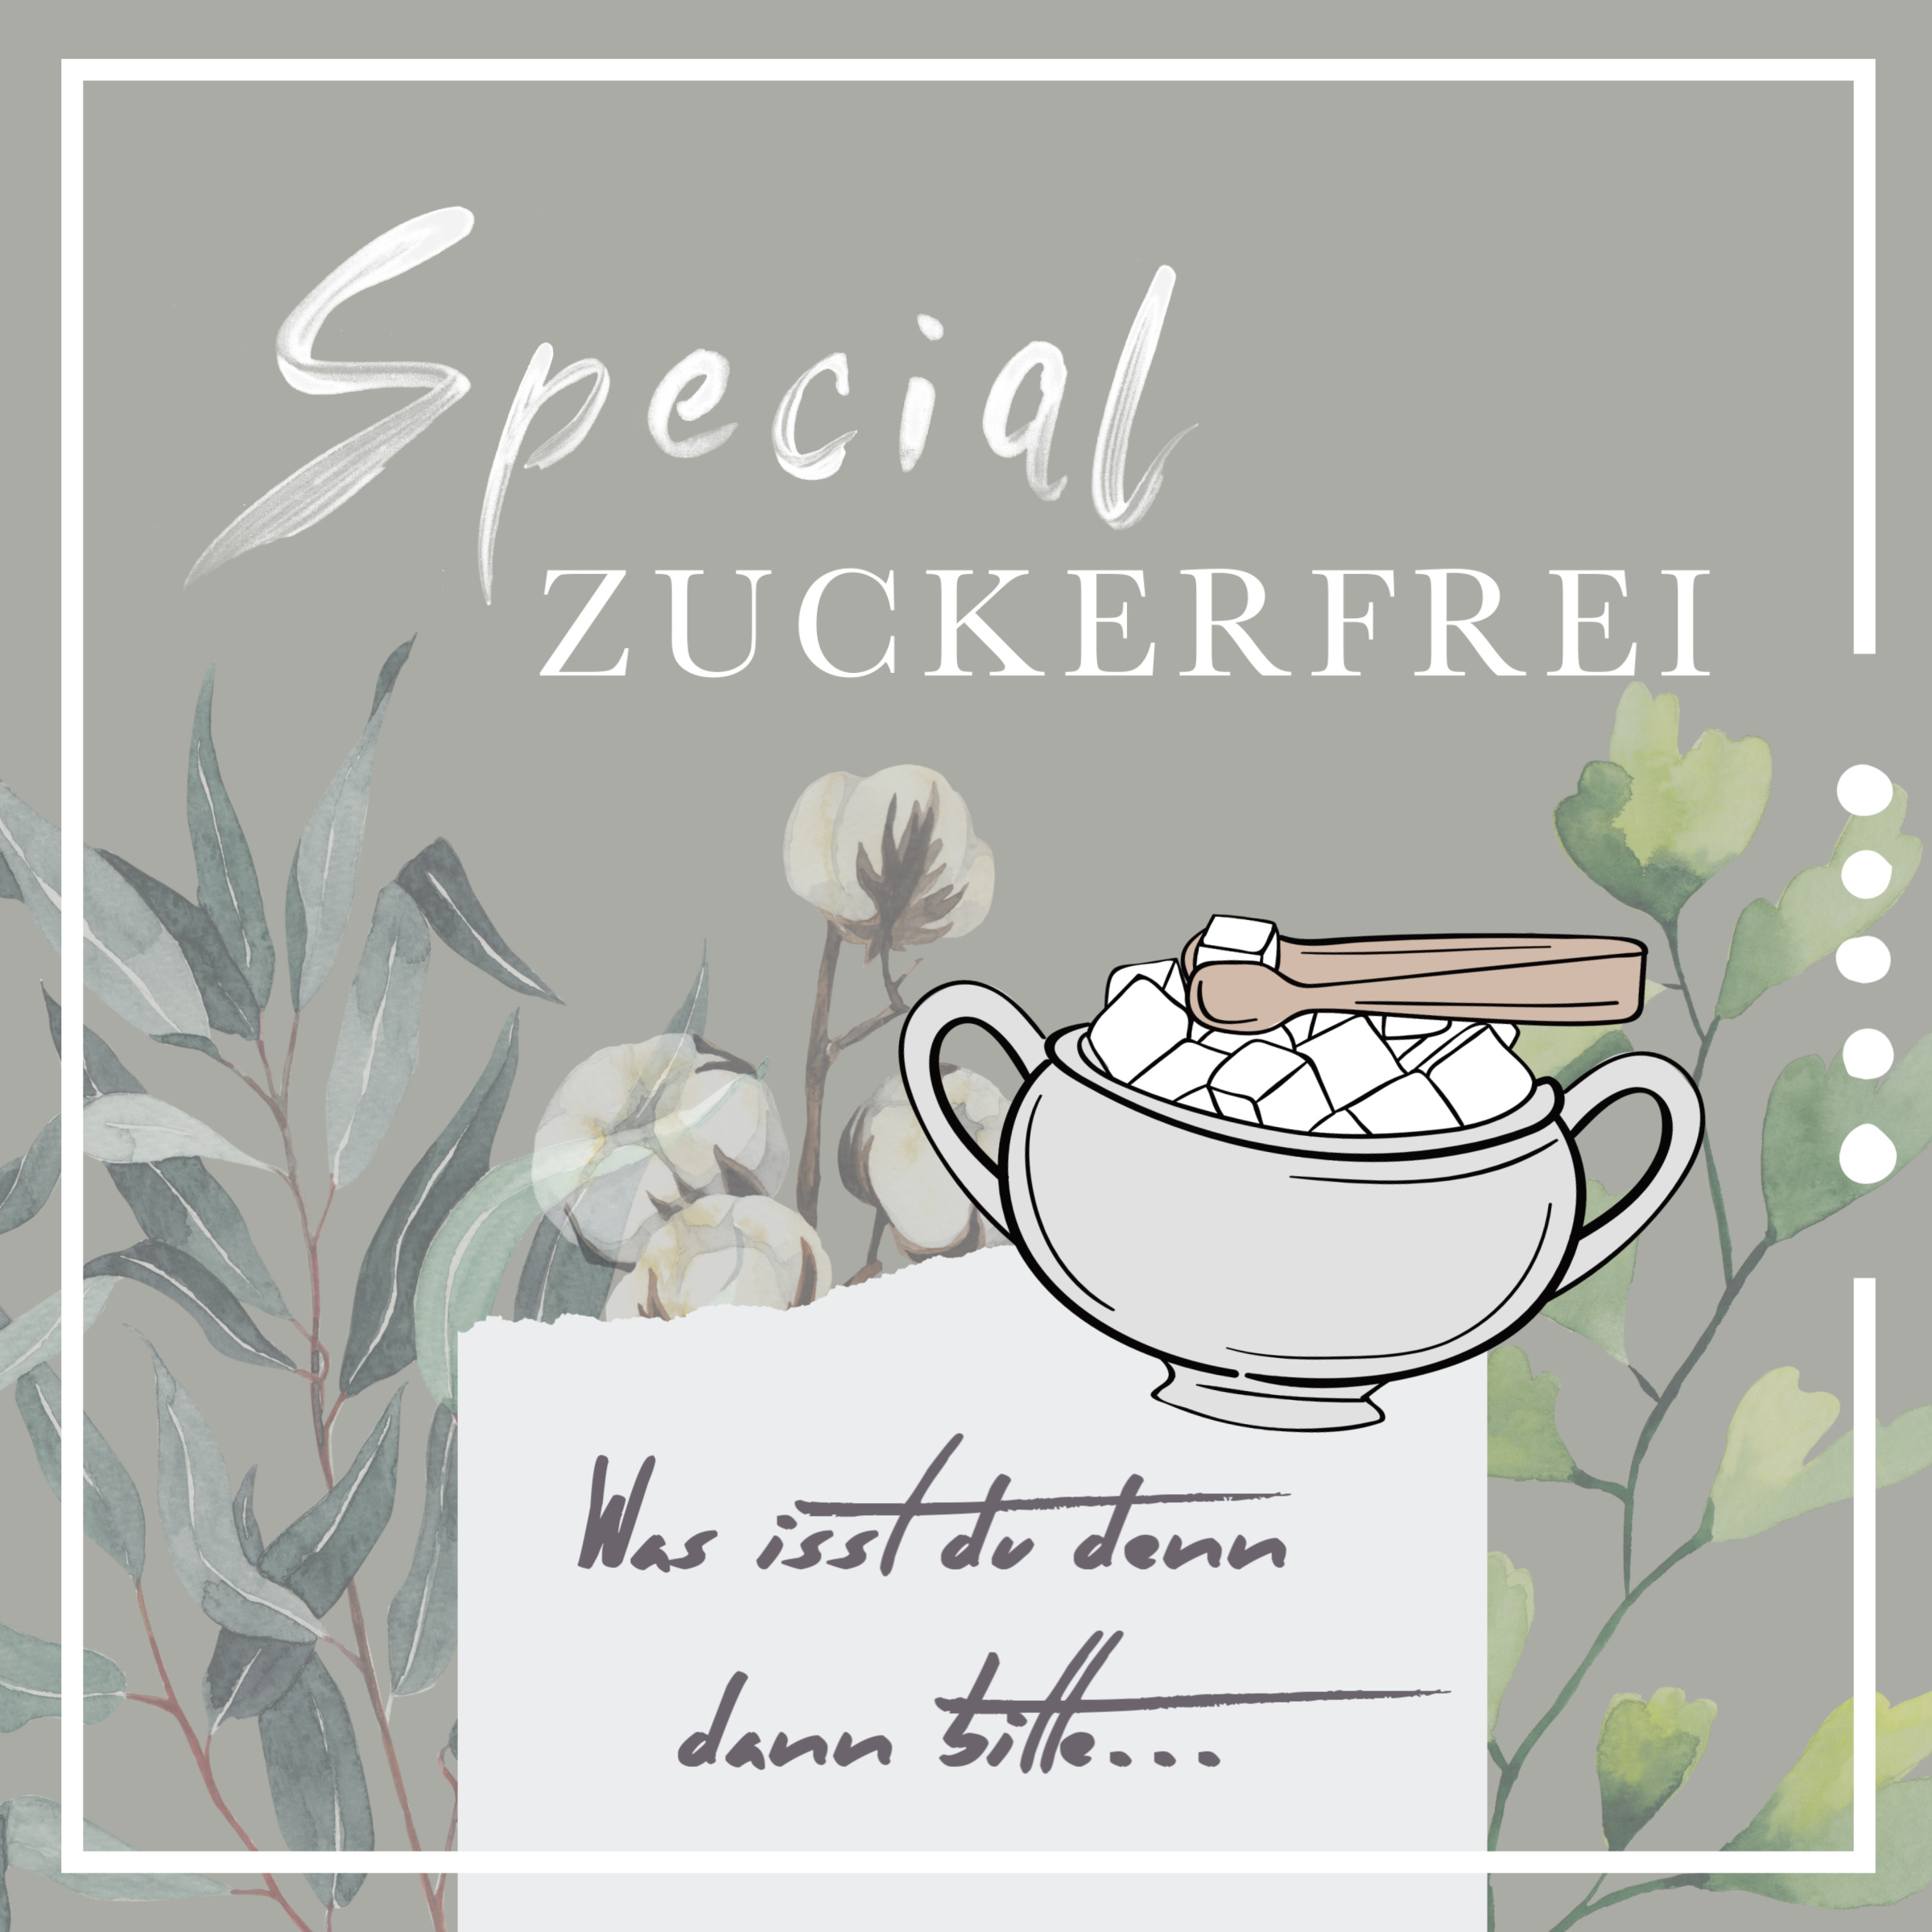 Special "Zuckerfrei"